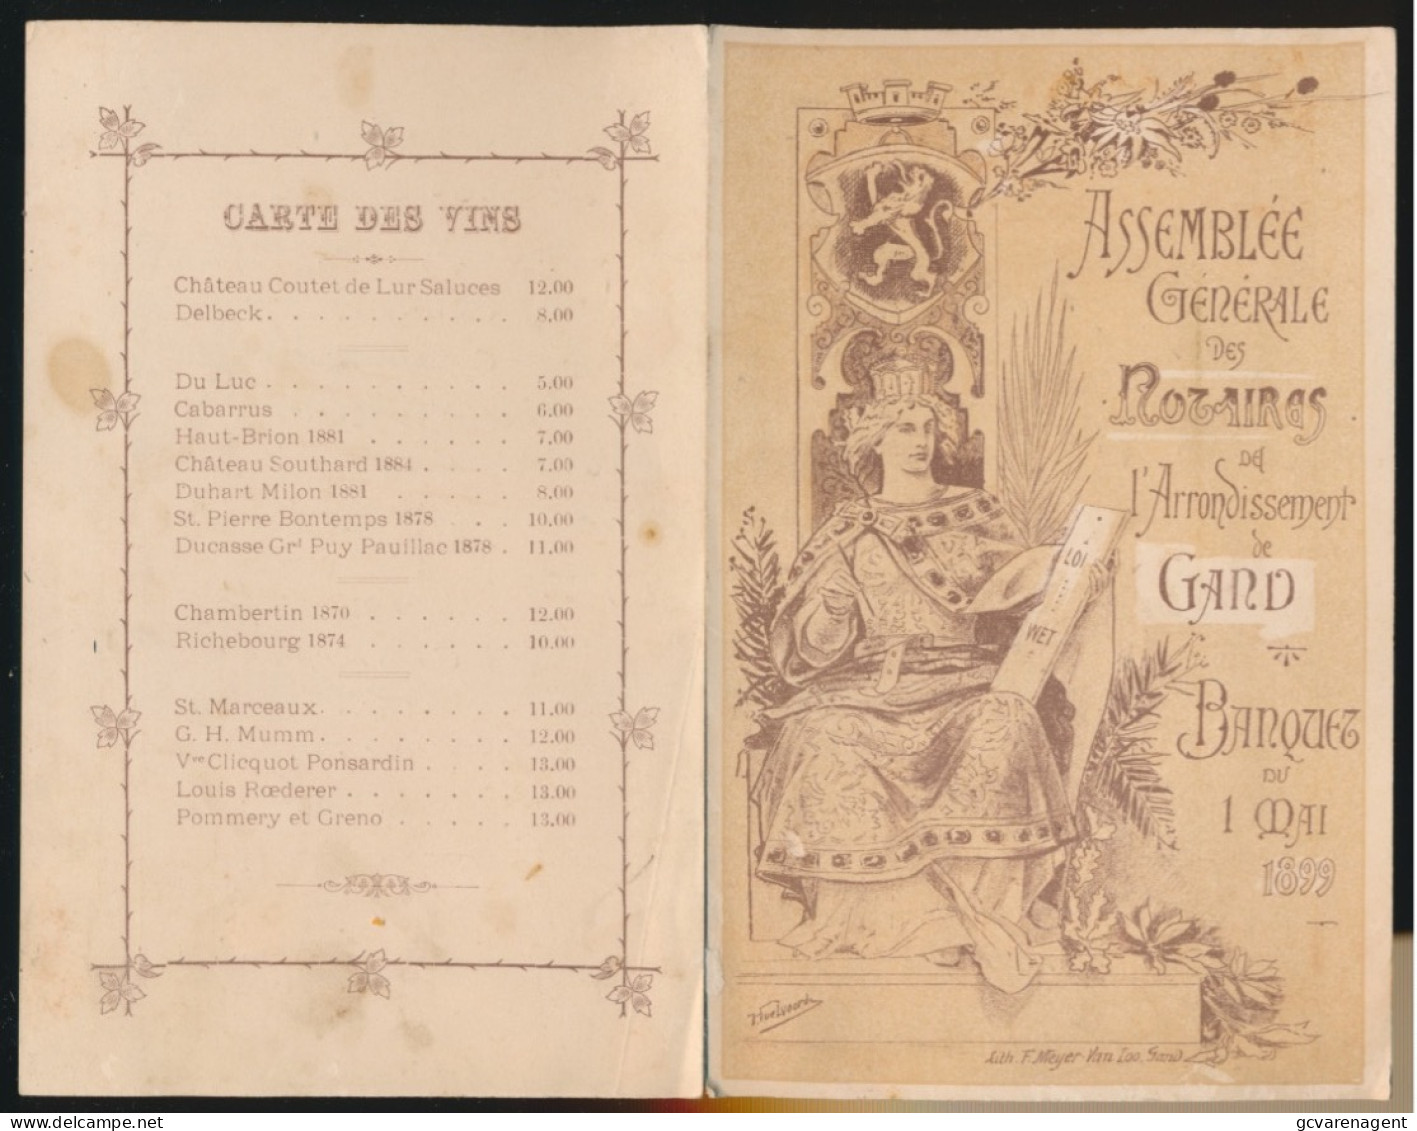 GAND BANQUET DU 1 MAI 1899 - ASSEMBLEE GENERALE DES ROSAIRES DE L'ARRONDISSEMENT DE GAND    195 X 120 MM - Menükarten